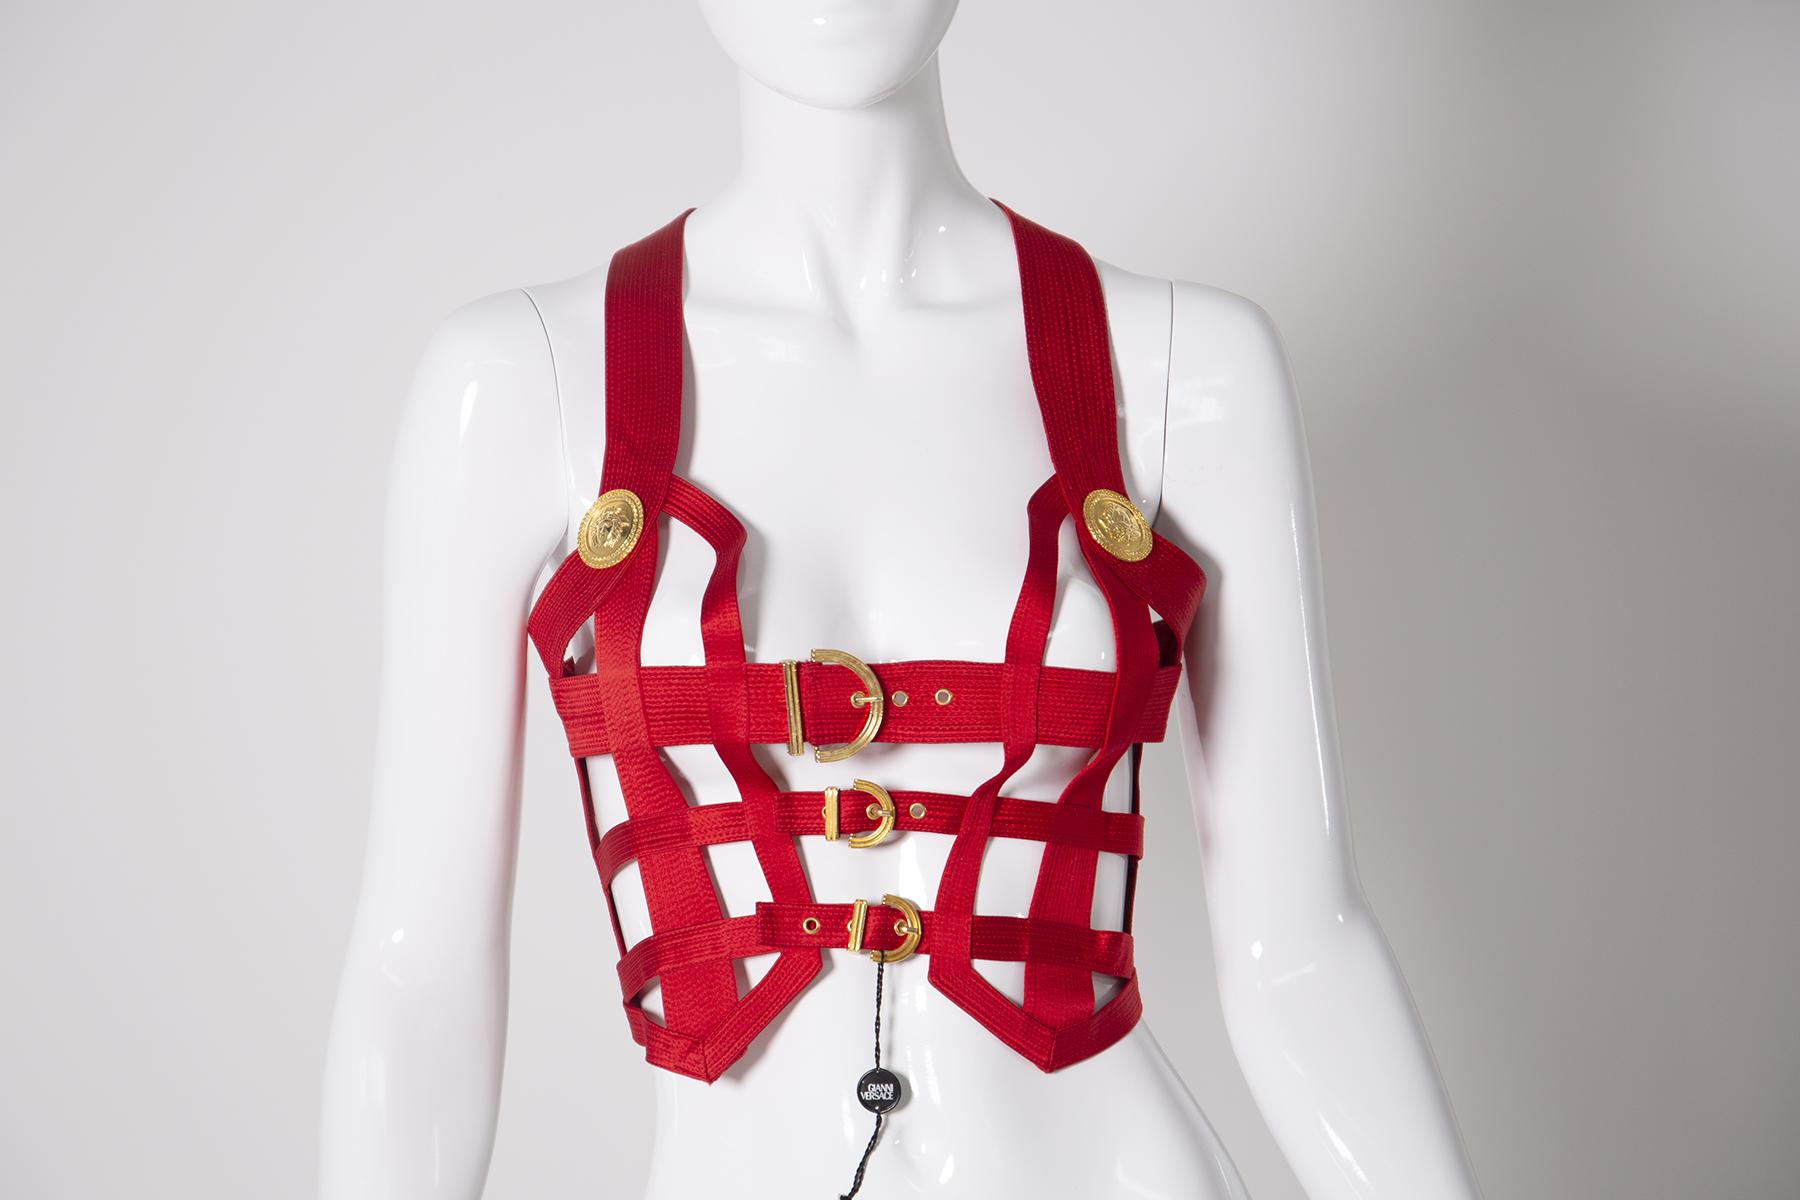 Incroyable, iconique et très rare corset cousu en soie rouge par Gianni Versace Couture avec corsage bondage en soie rouge avec garniture gaufrée Méduse en or. Labellisé avec une taille italienne 42 qui correspond à un US 2 ou 4.Fabriqué en Italie.